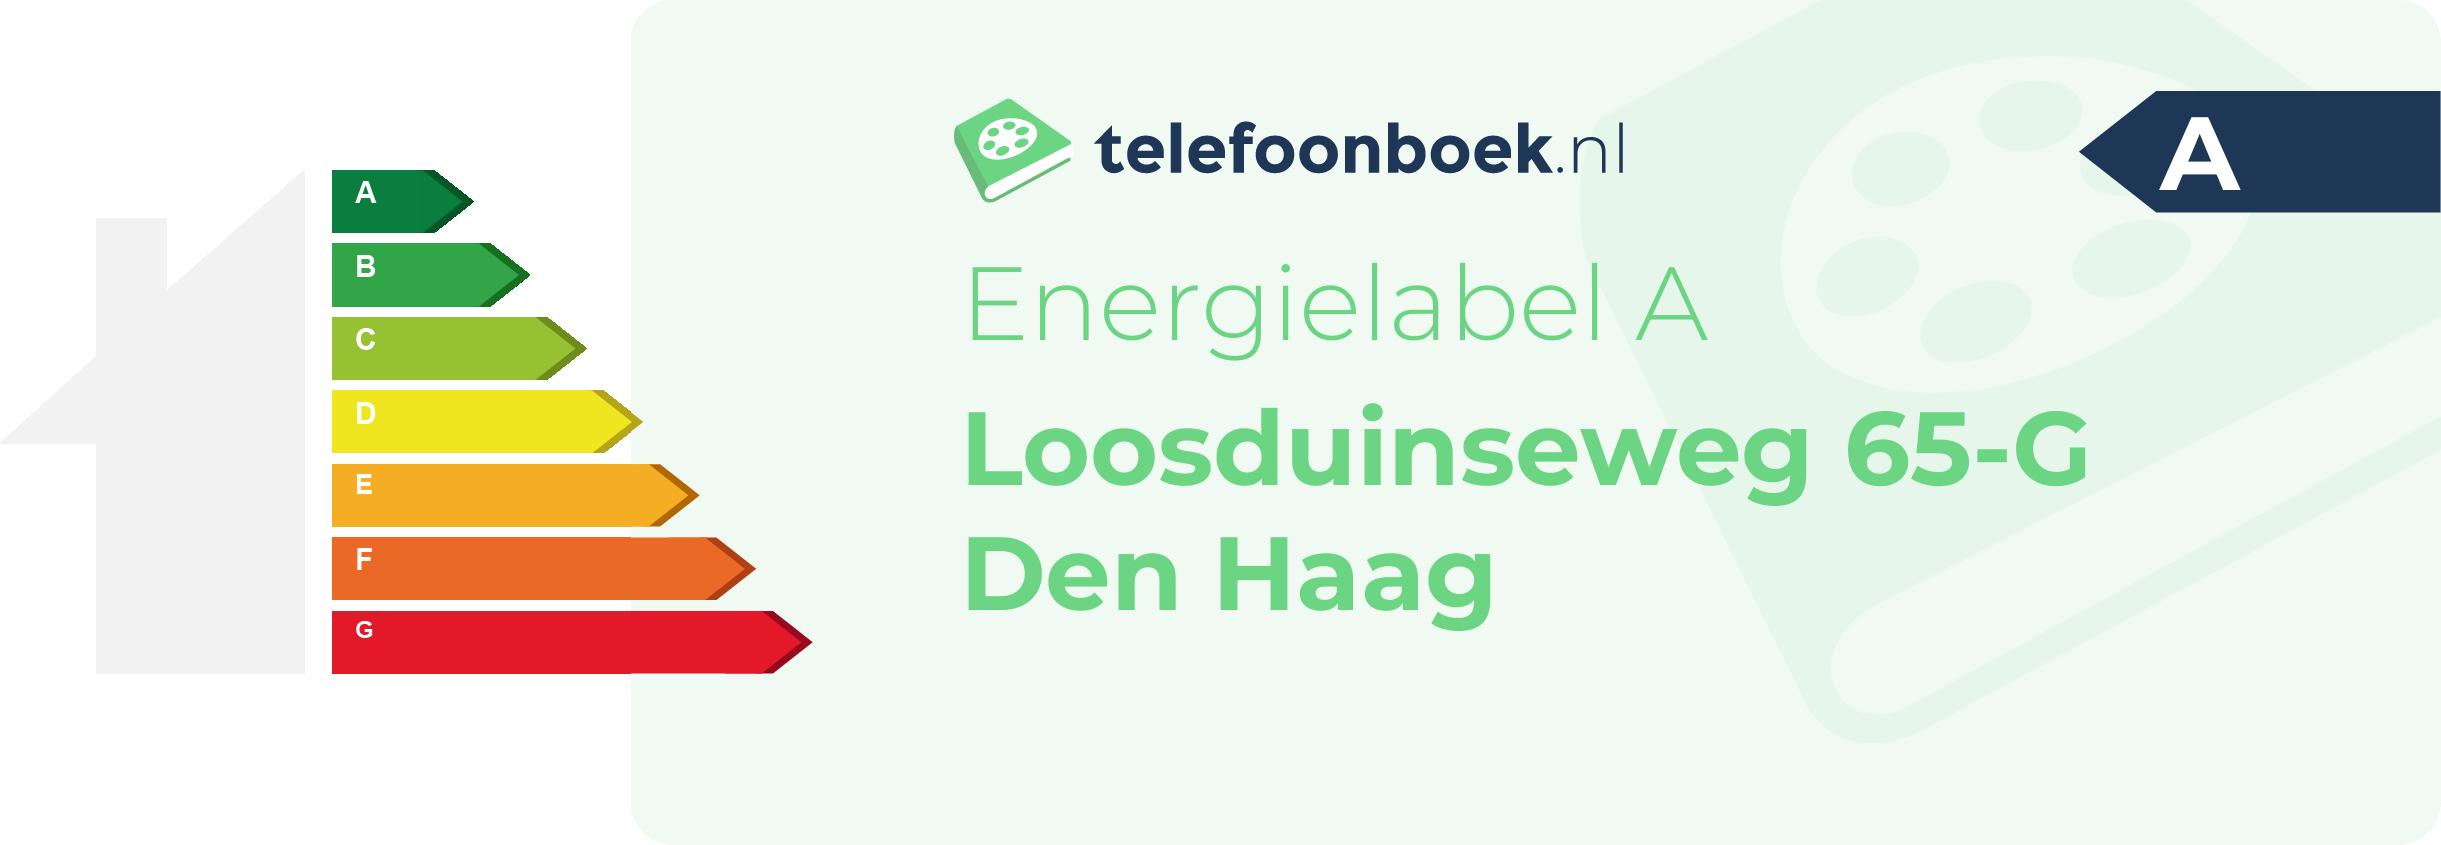 Energielabel Loosduinseweg 65-G Den Haag